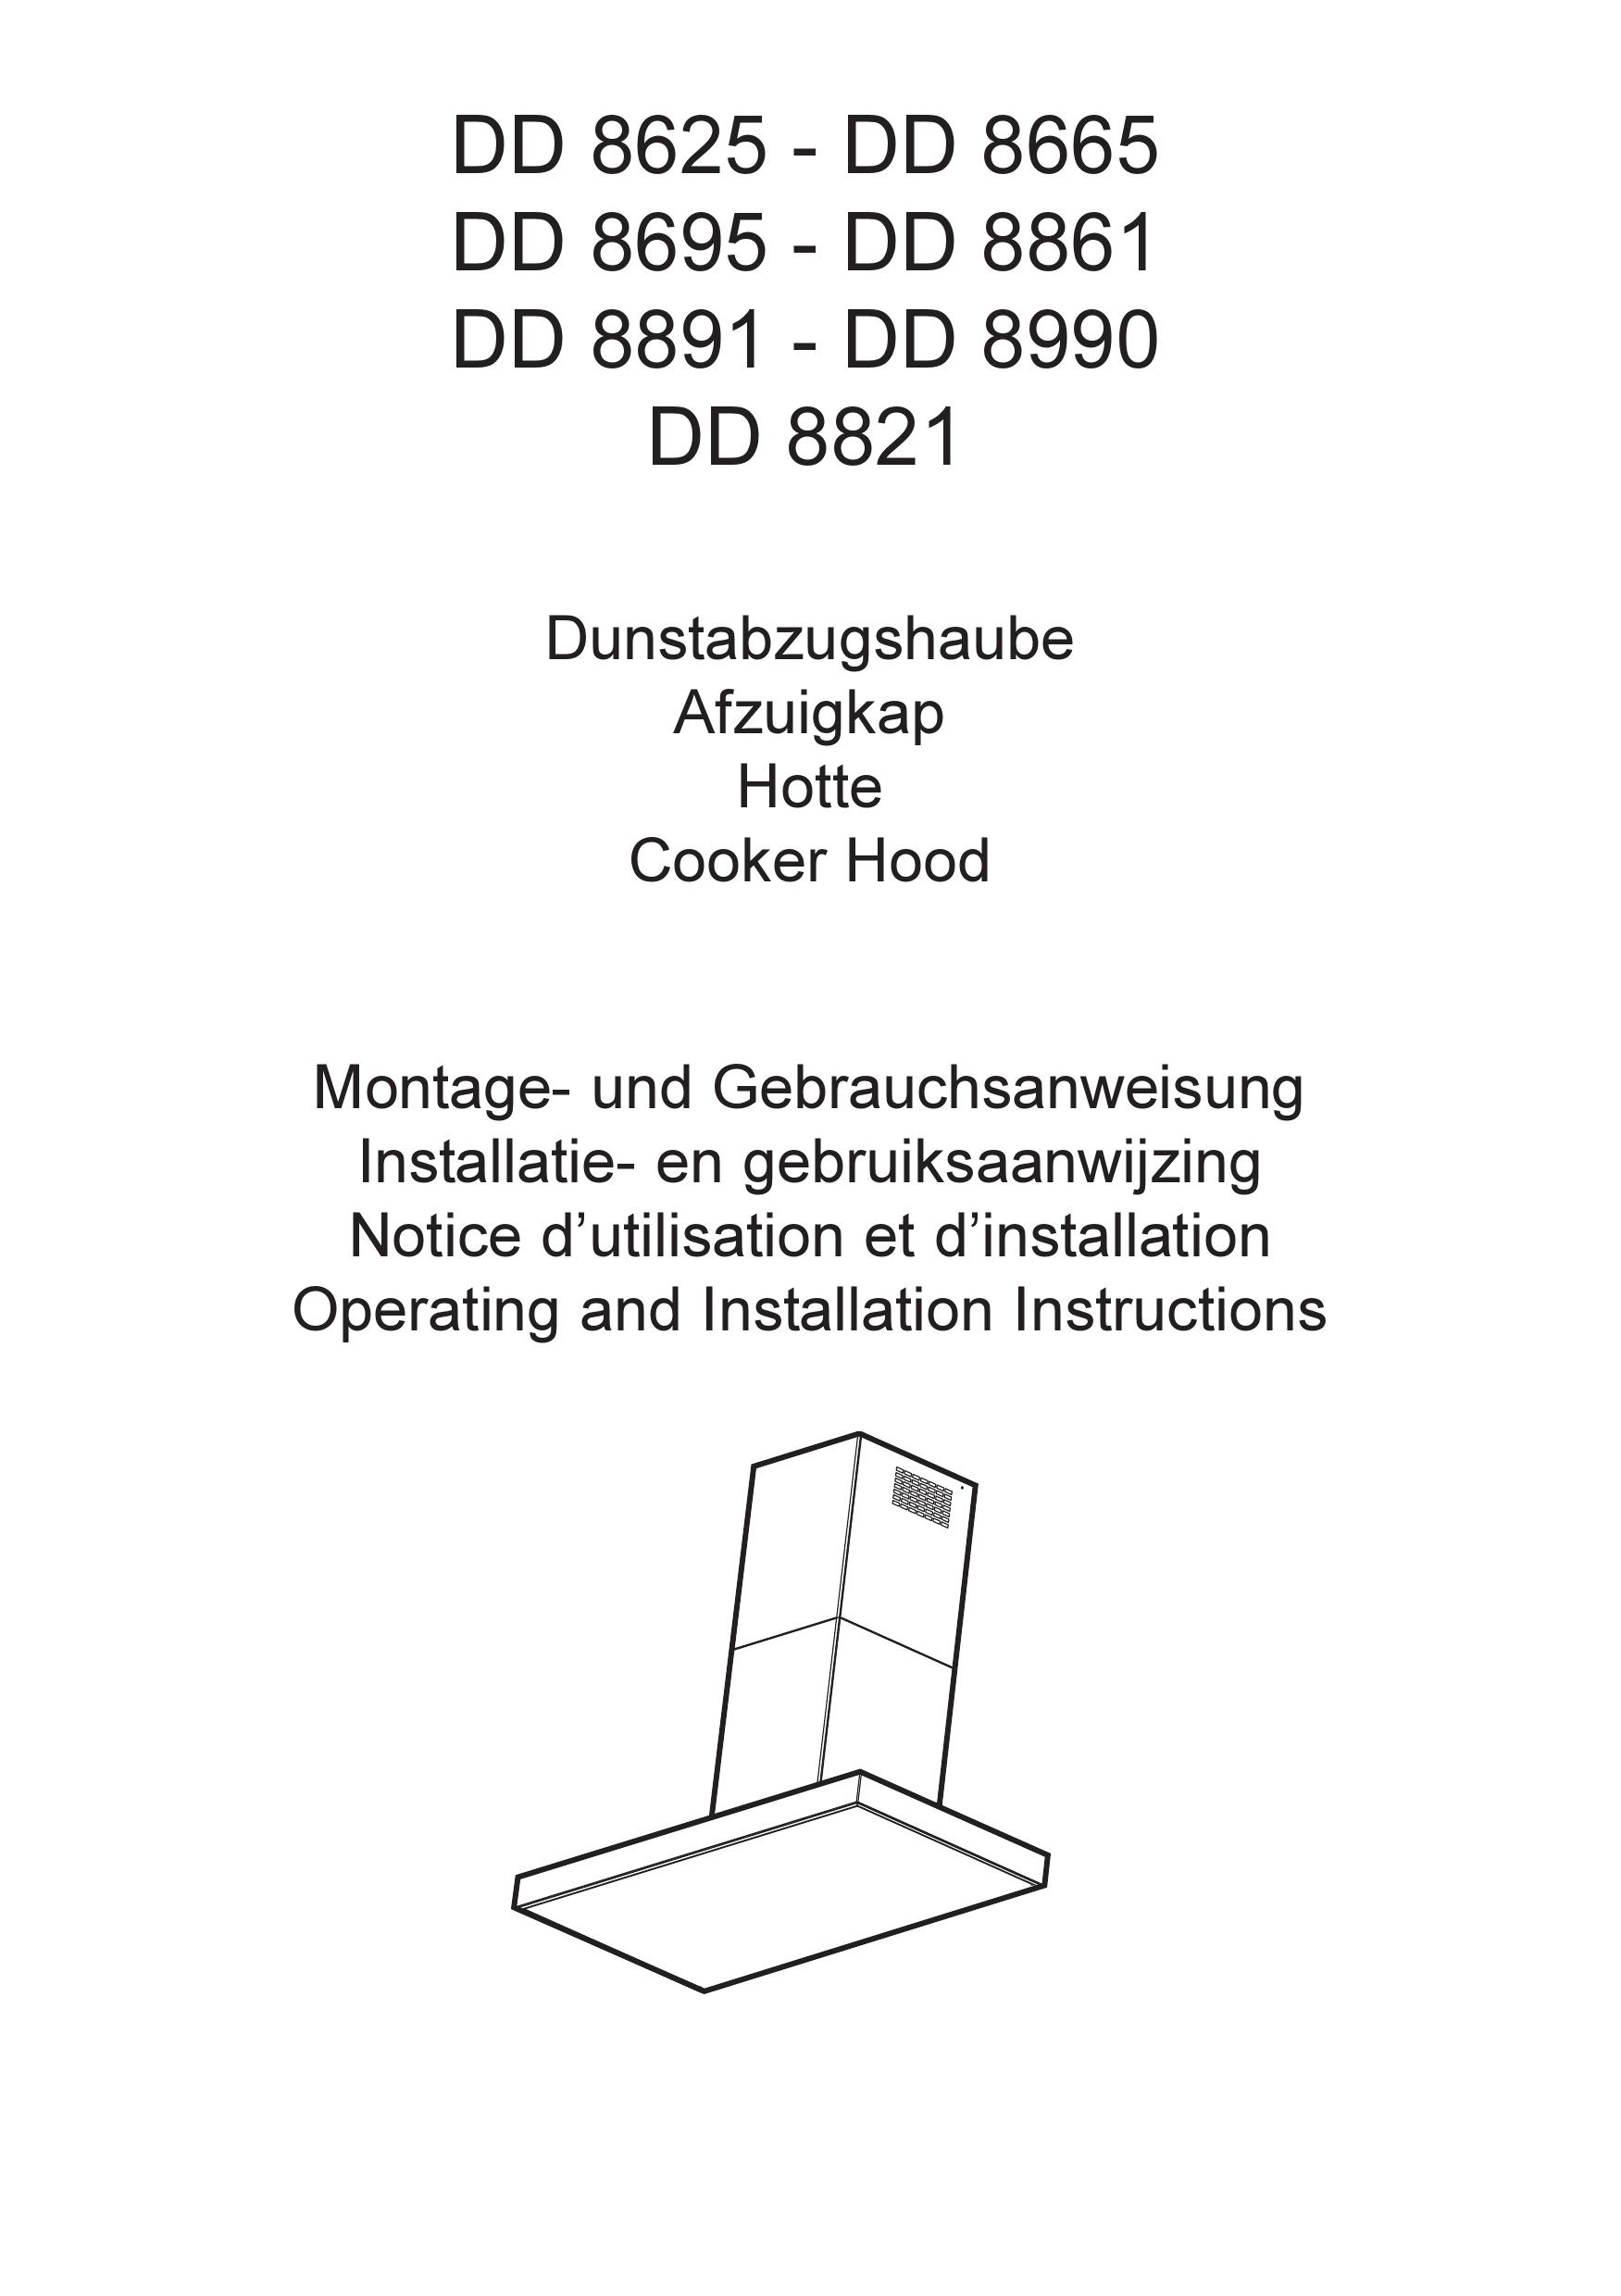 AEG DD 8665 Ventilation Hood User Manual